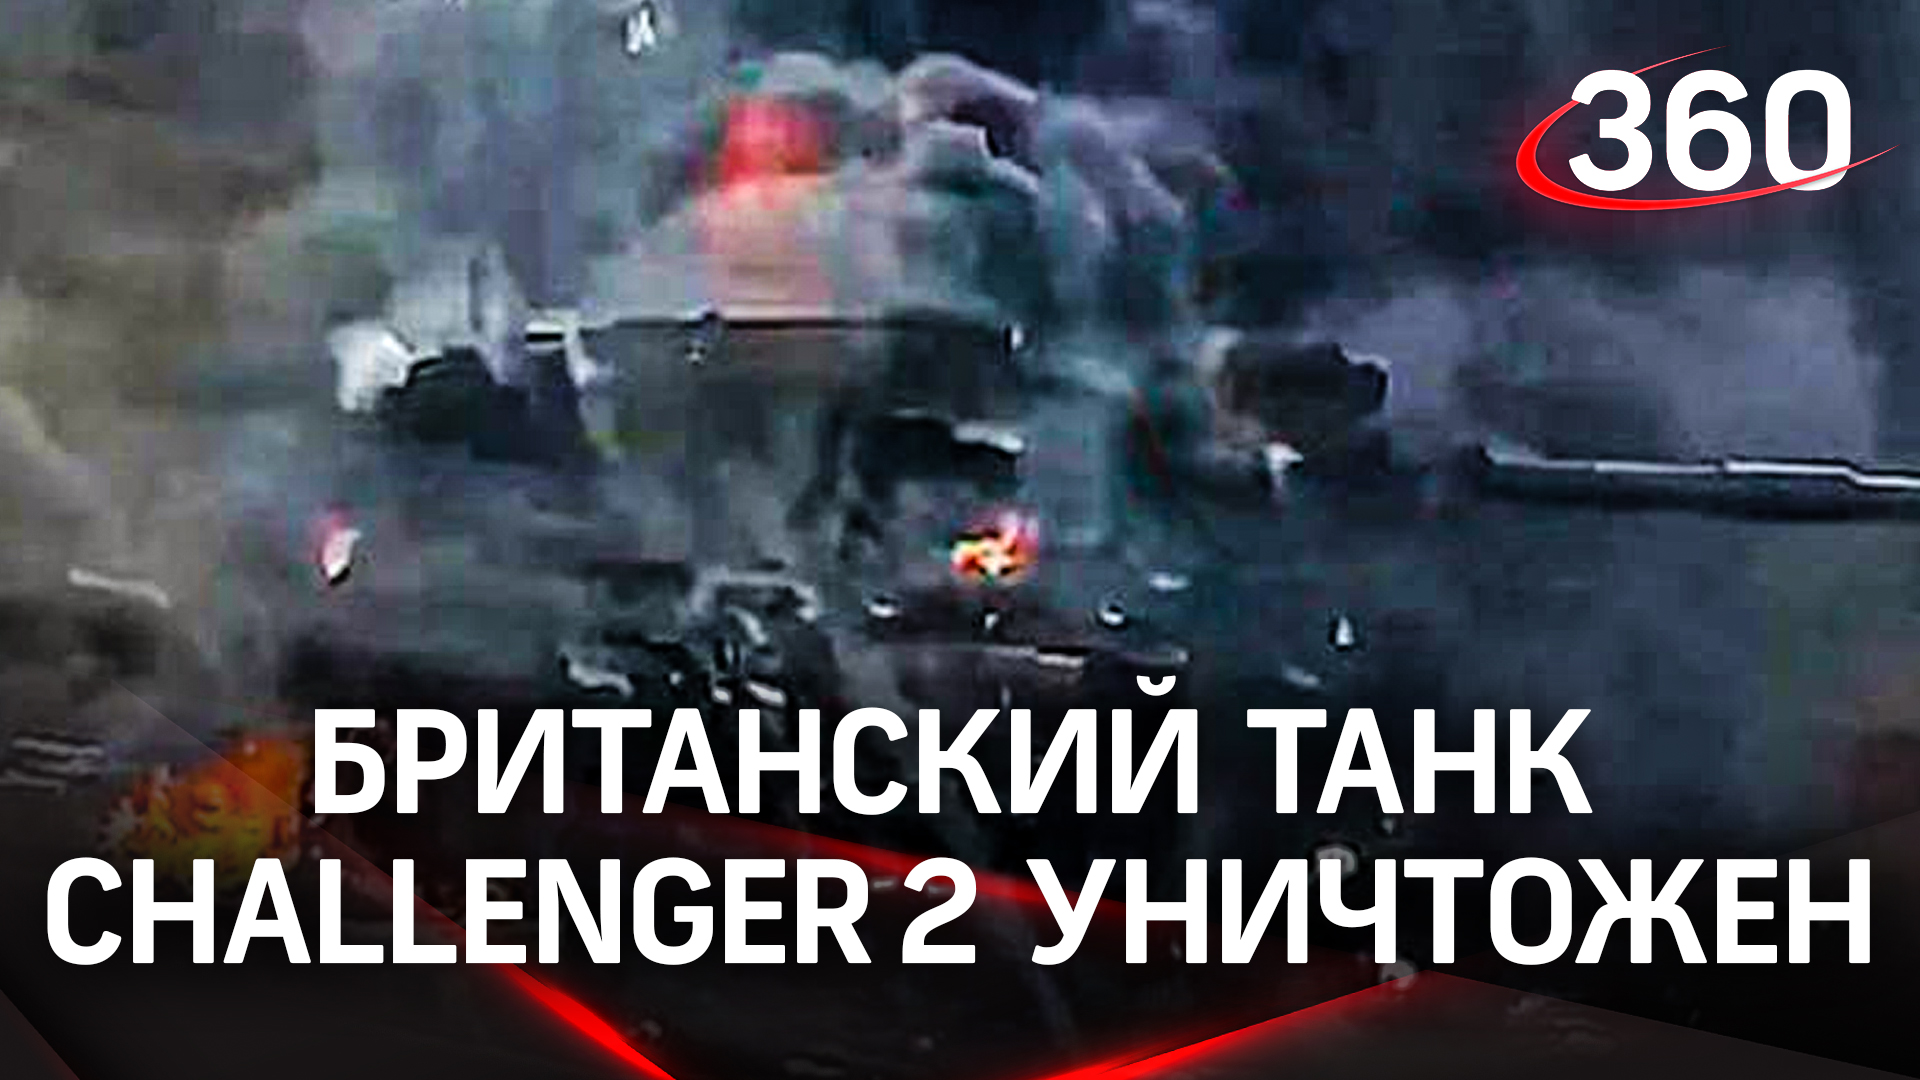 Британский танк Challenger 2 впервые уничтожен в бою - горит хорошо